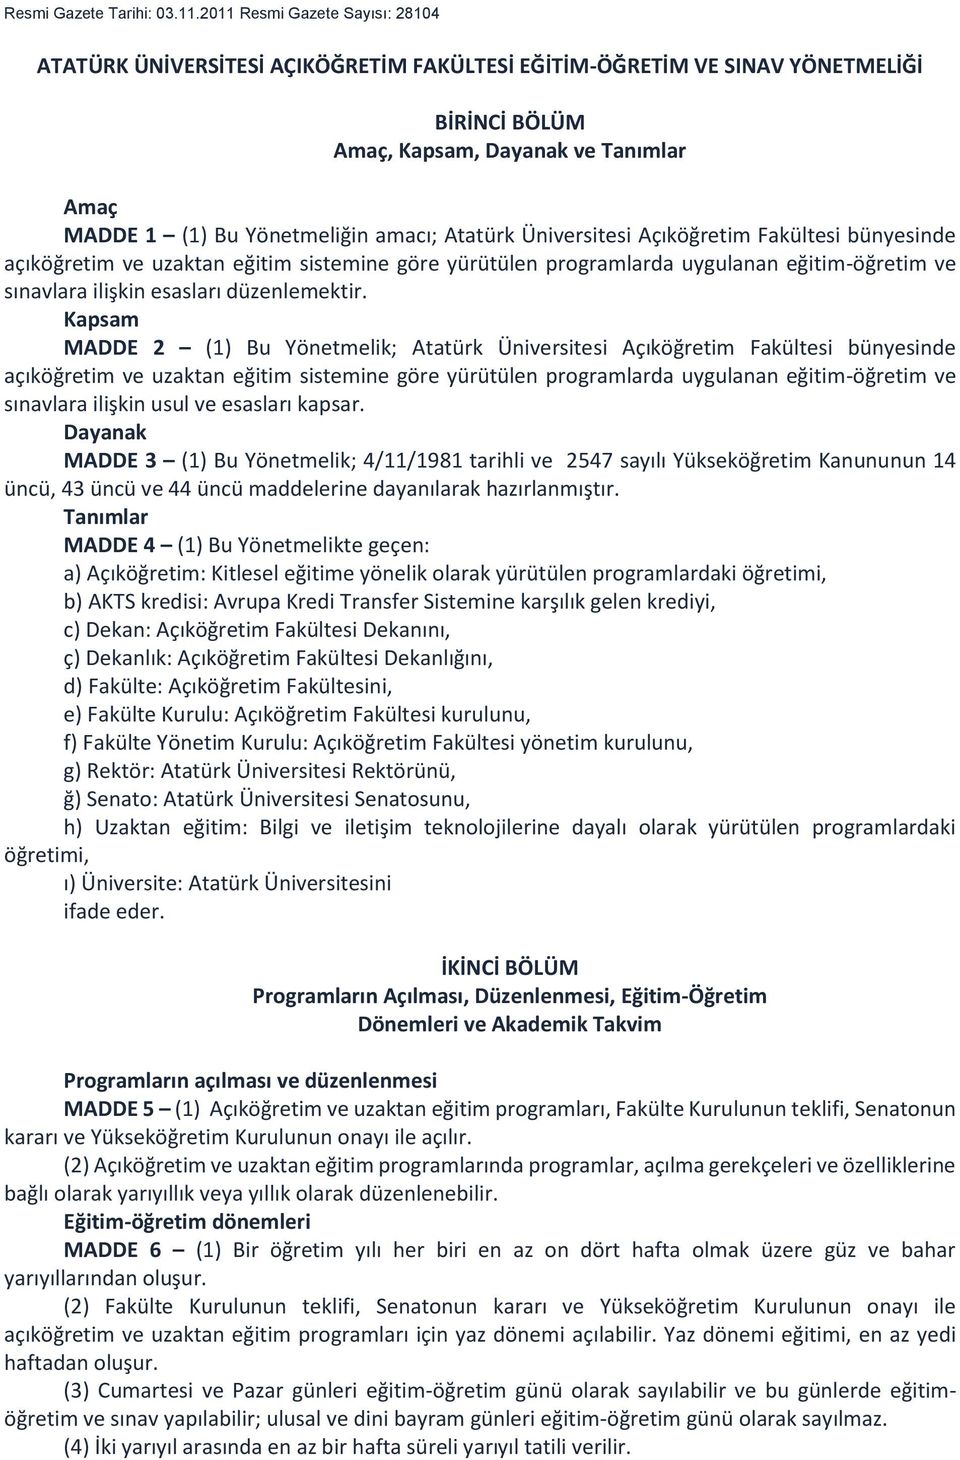 Atatürk Üniversitesi Açıköğretim Fakültesi bünyesinde açıköğretim ve uzaktan eğitim sistemine göre yürütülen programlarda uygulanan eğitim-öğretim ve sınavlara ilişkin esasları düzenlemektir.